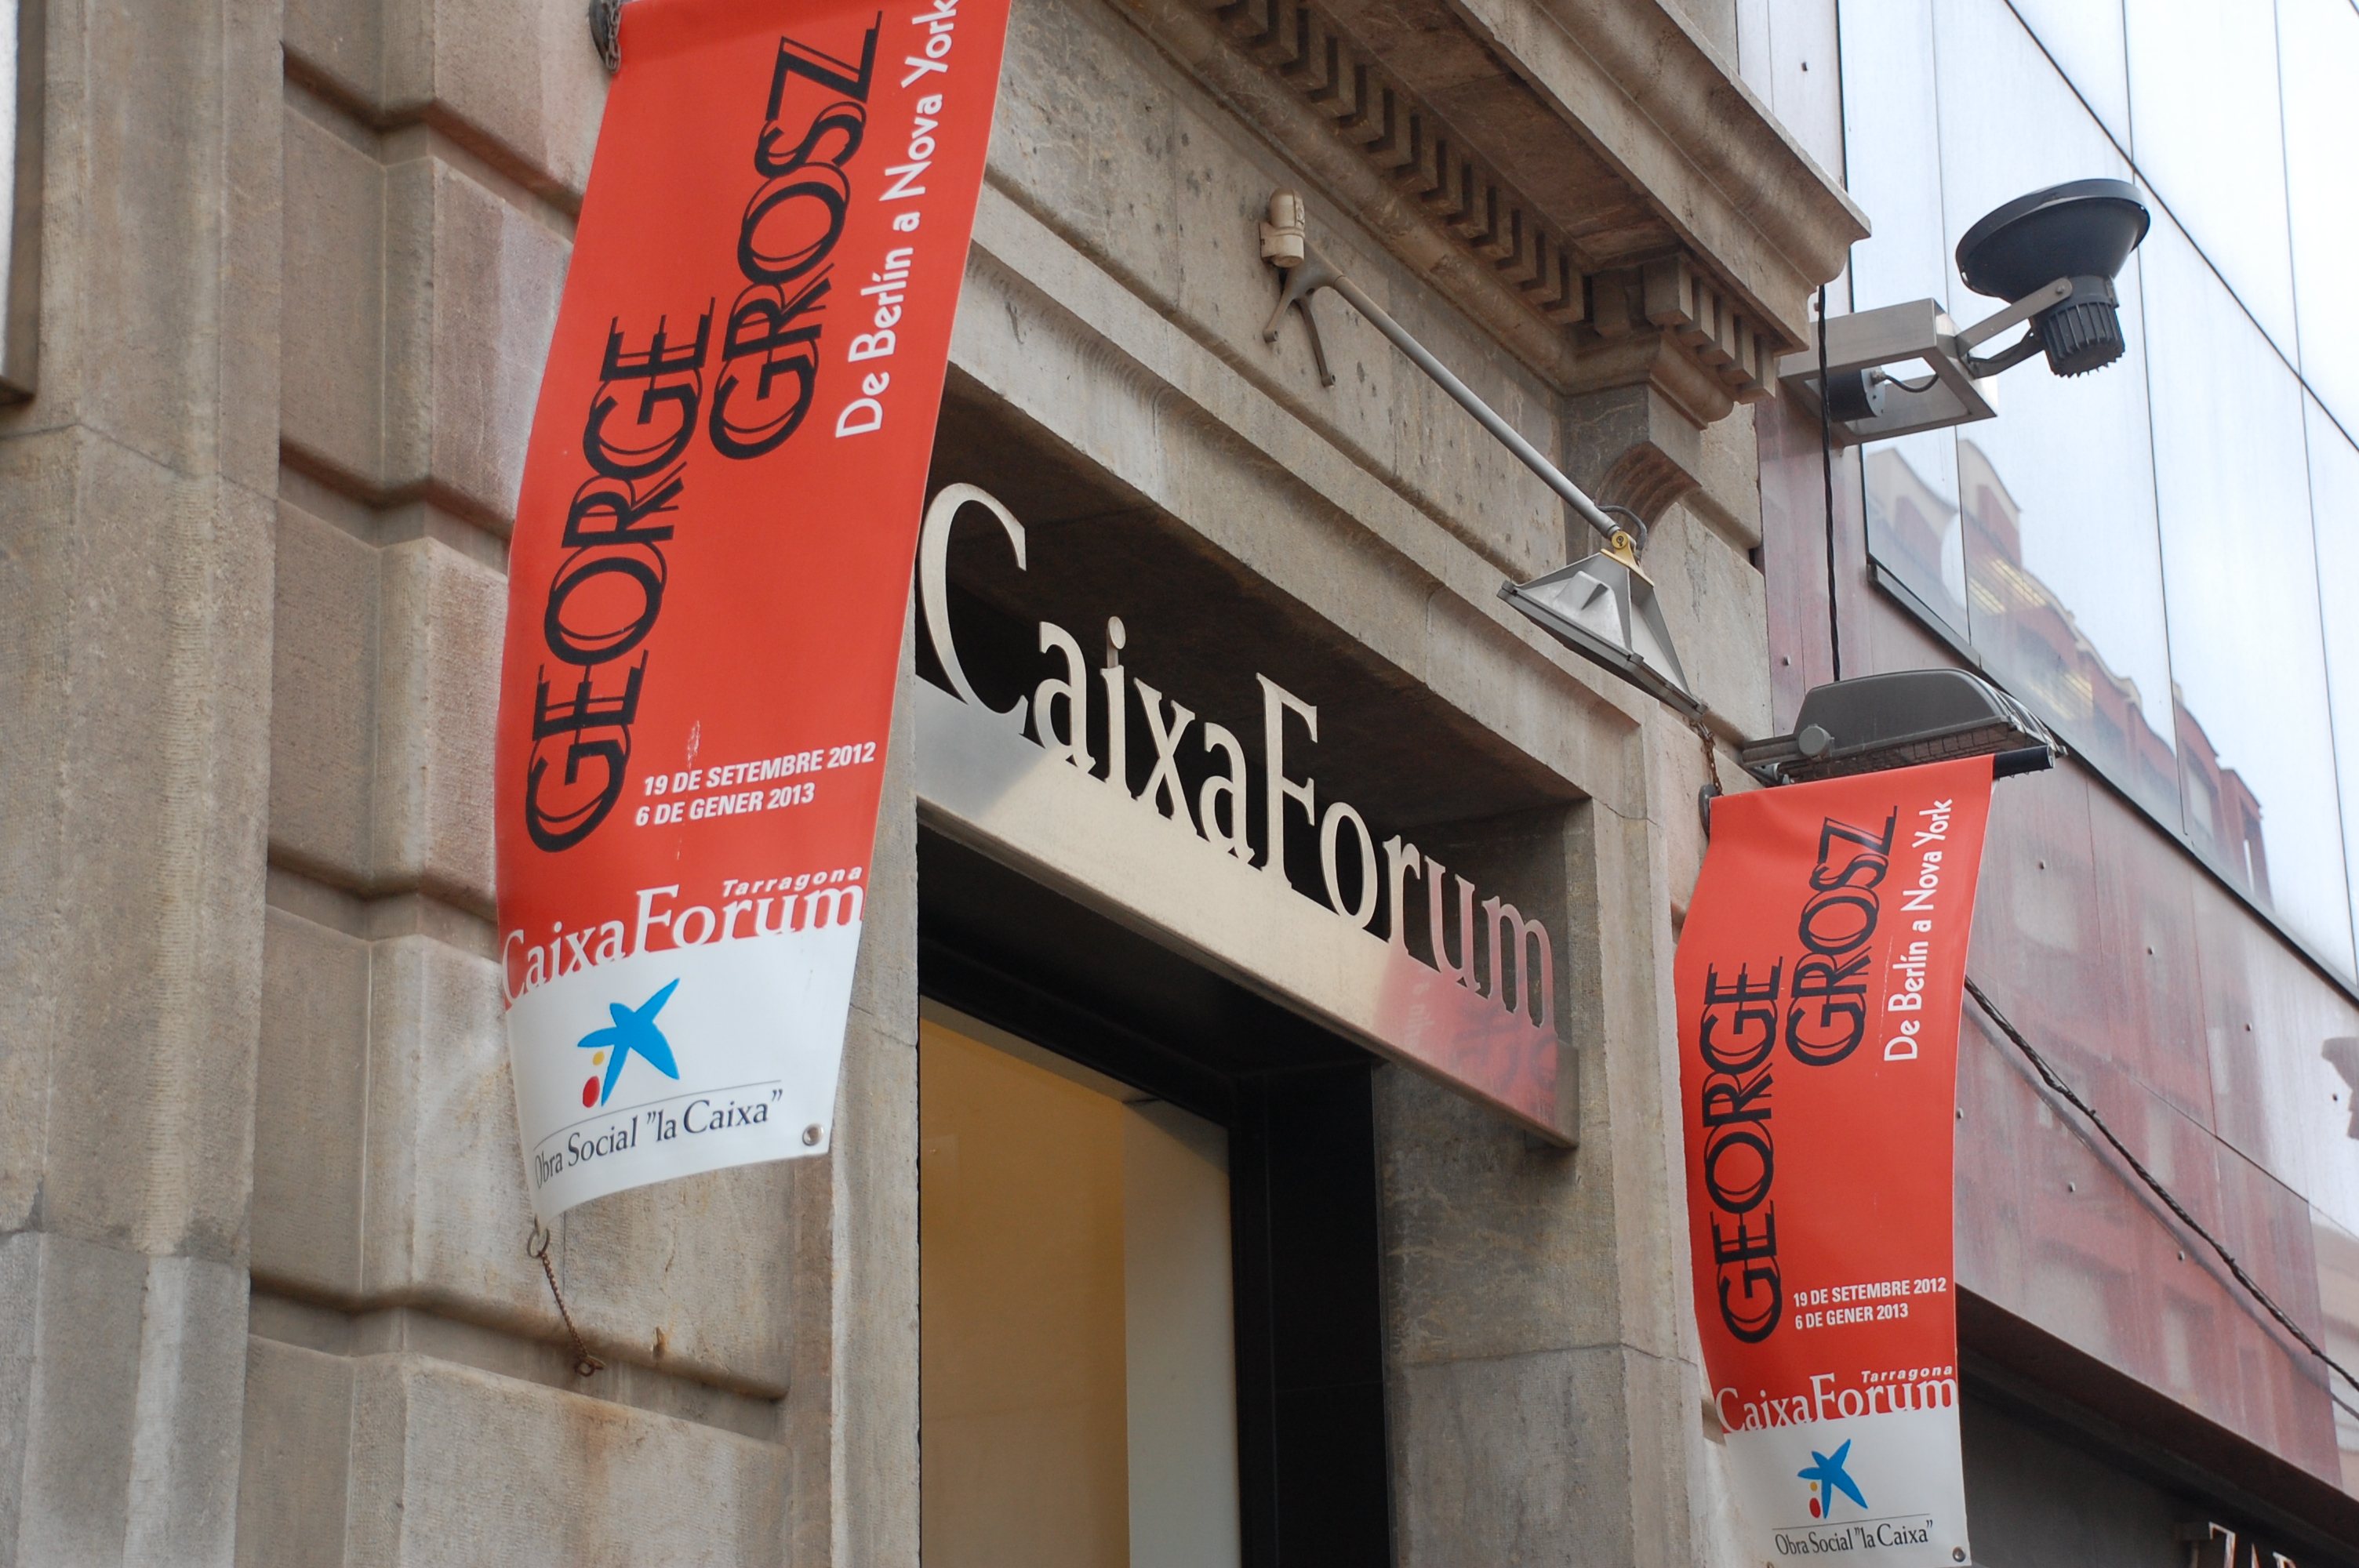 El CaixaForum Tarragona està situat al carrer Colom núm. 2